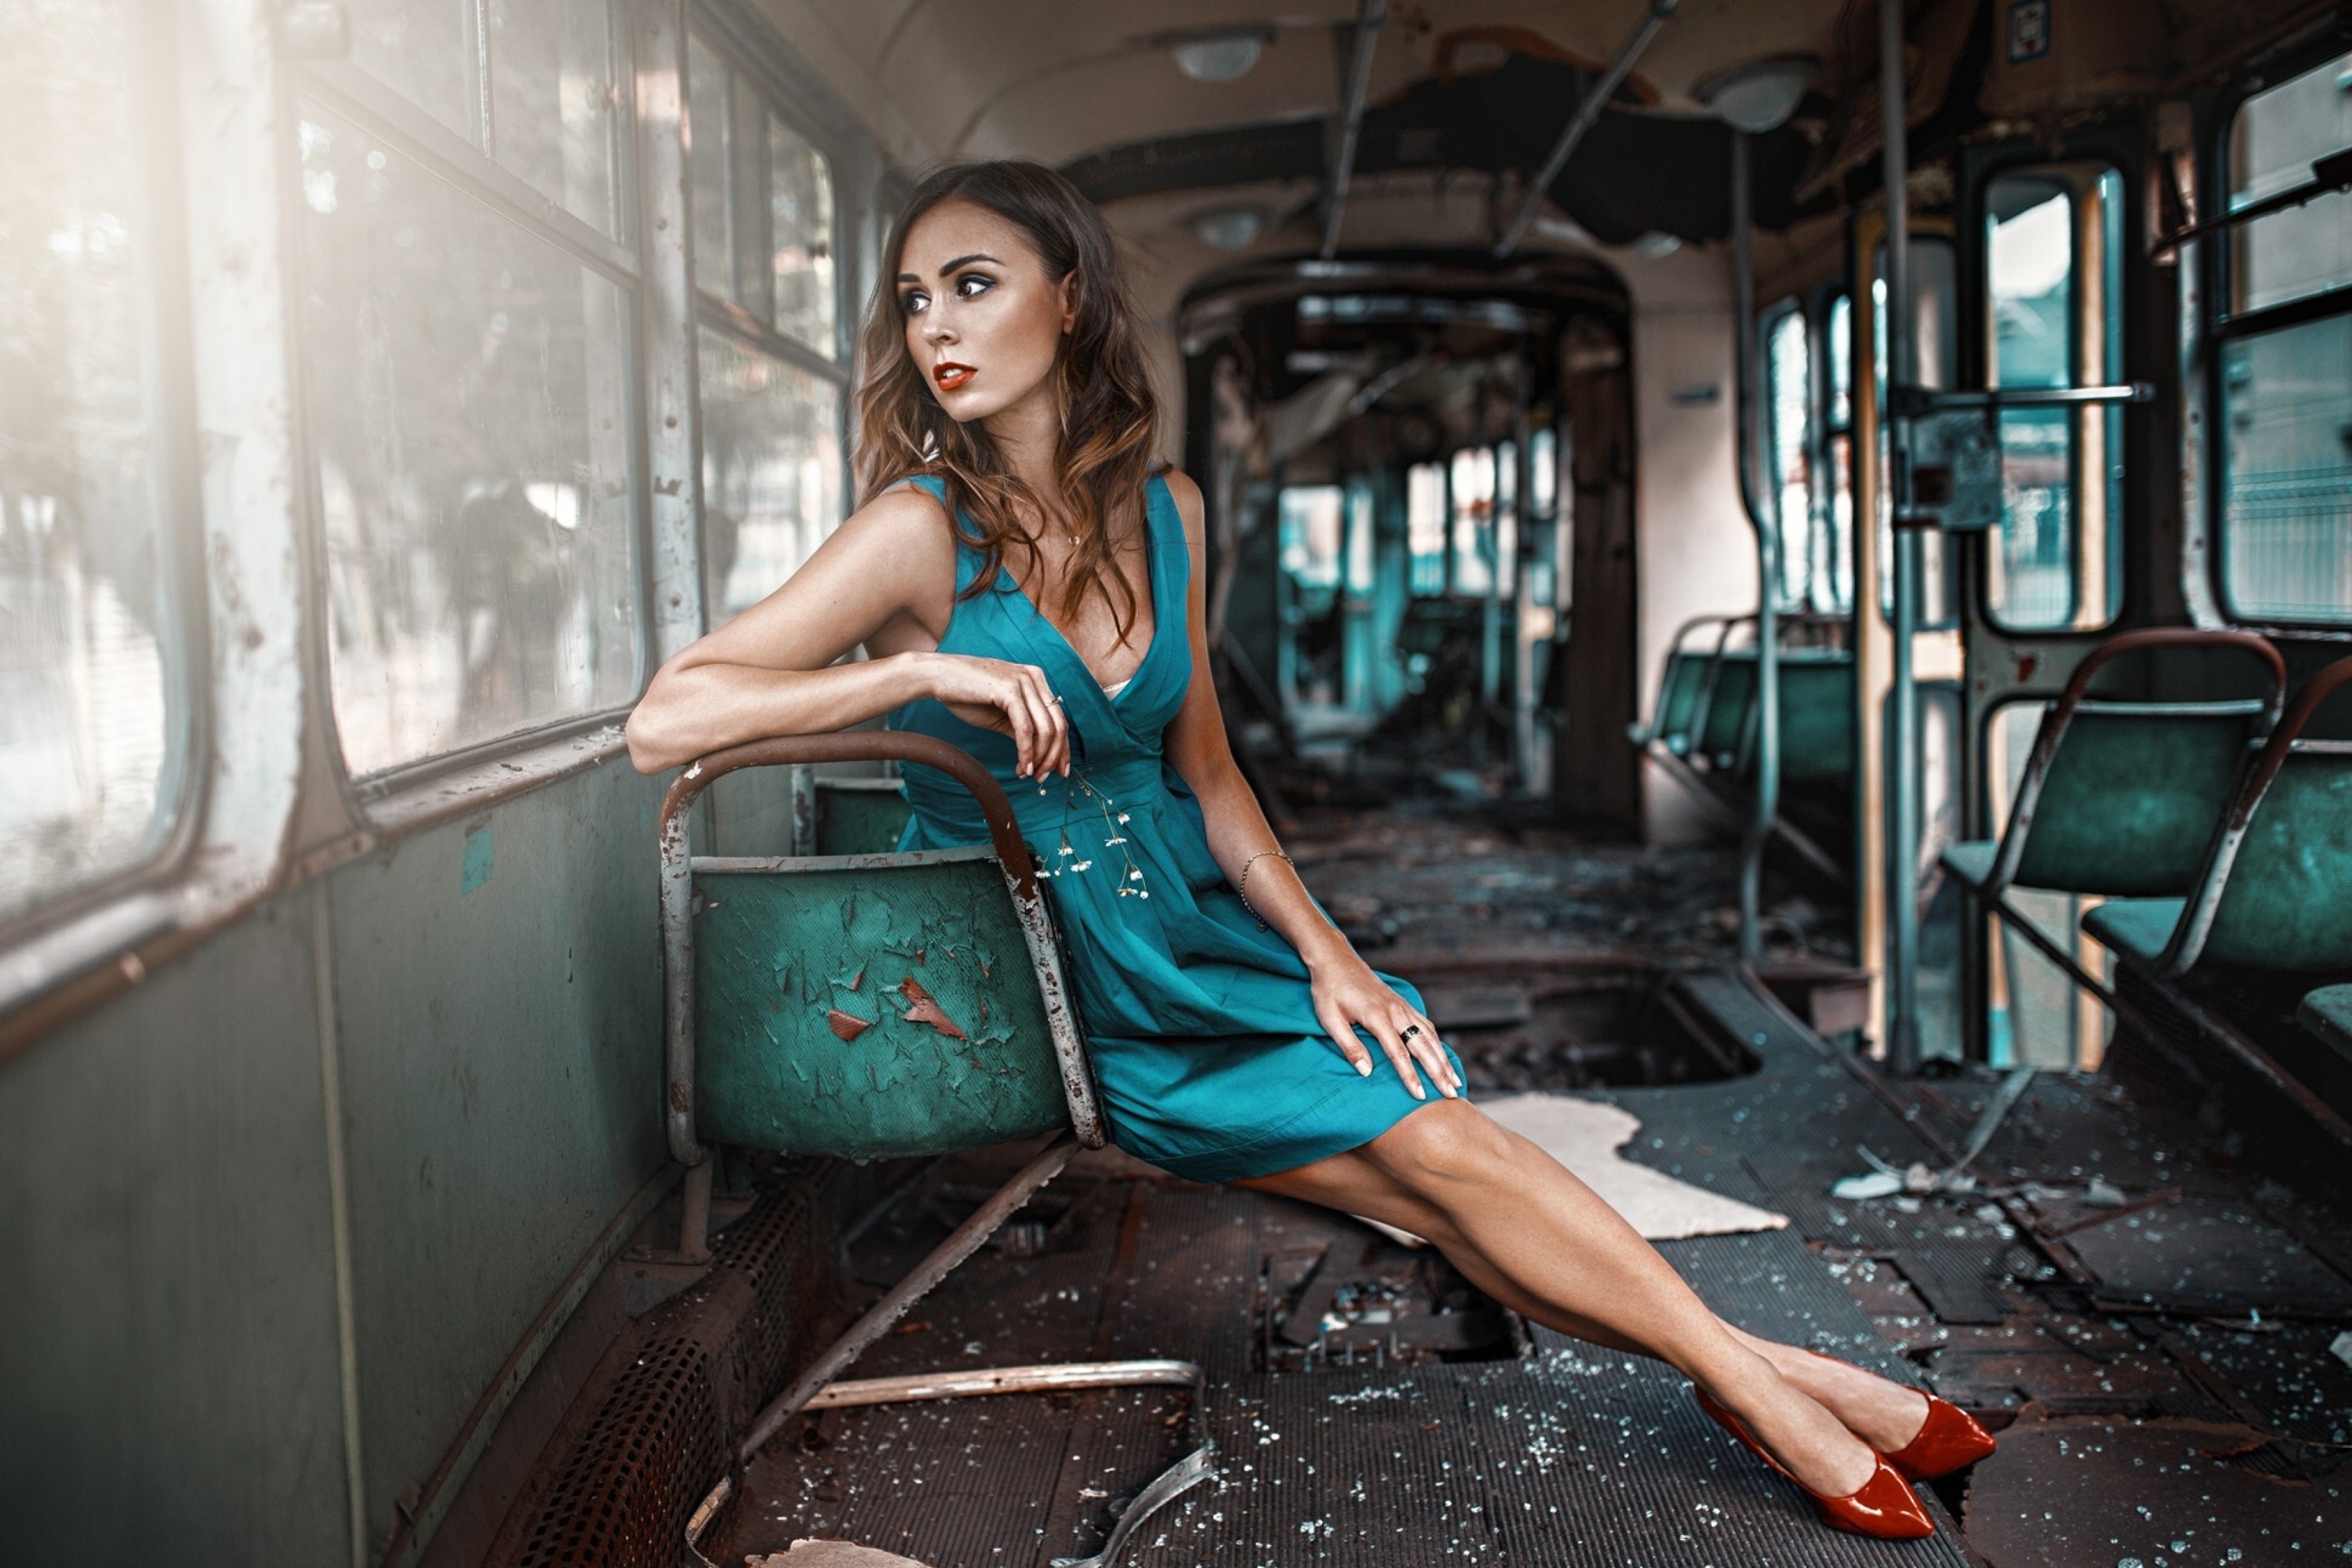 Обои Girl in abandoned train 2880x1920